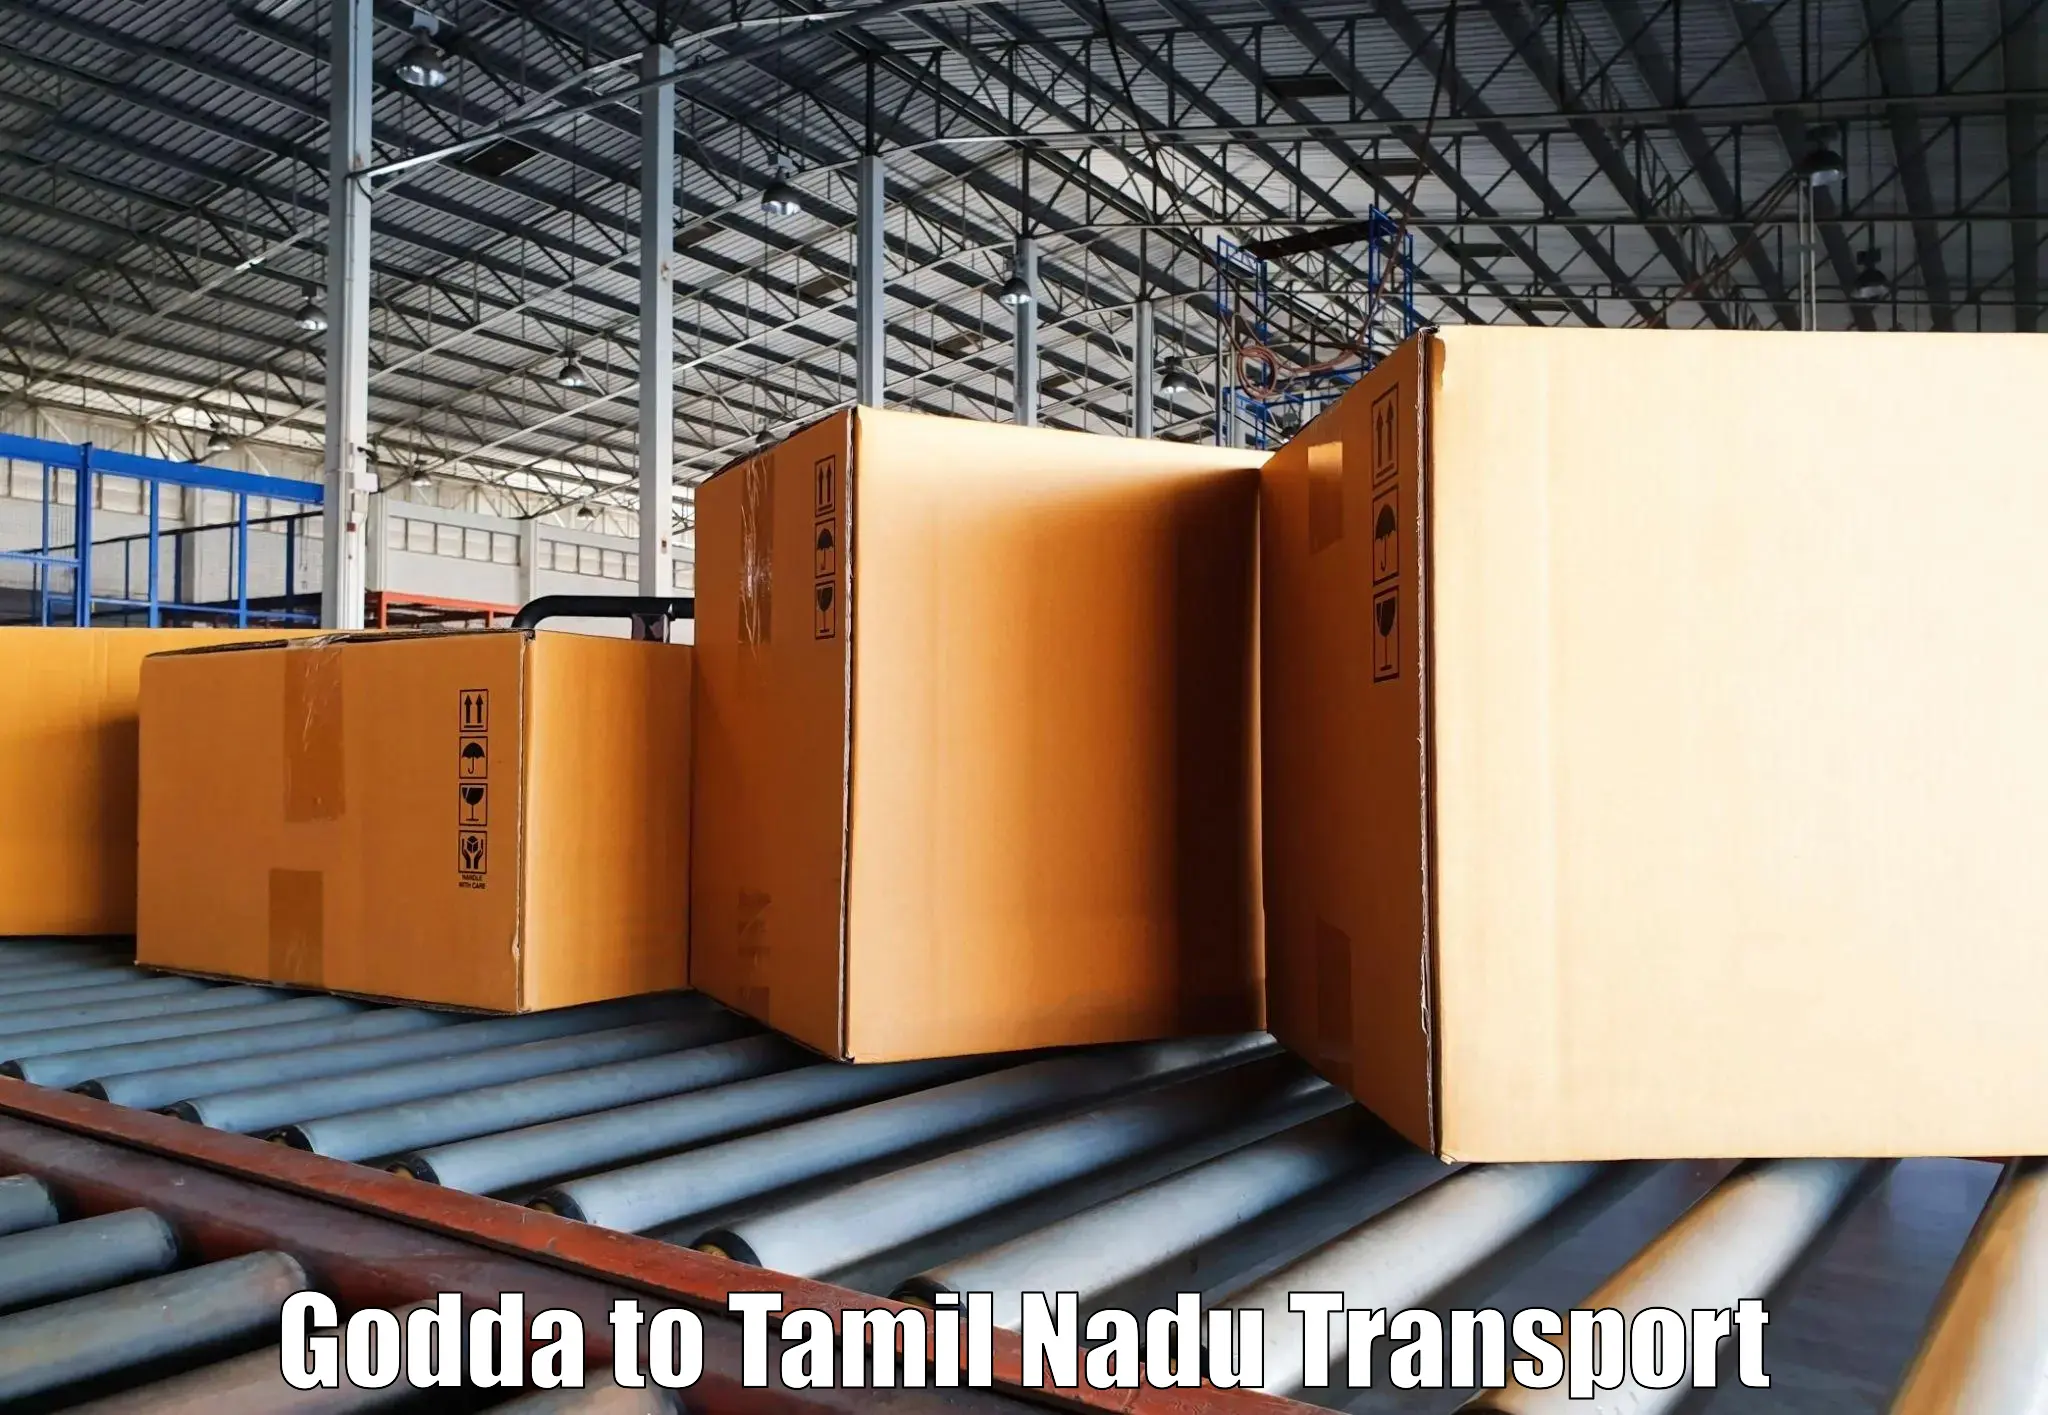 Lorry transport service Godda to Kulithalai